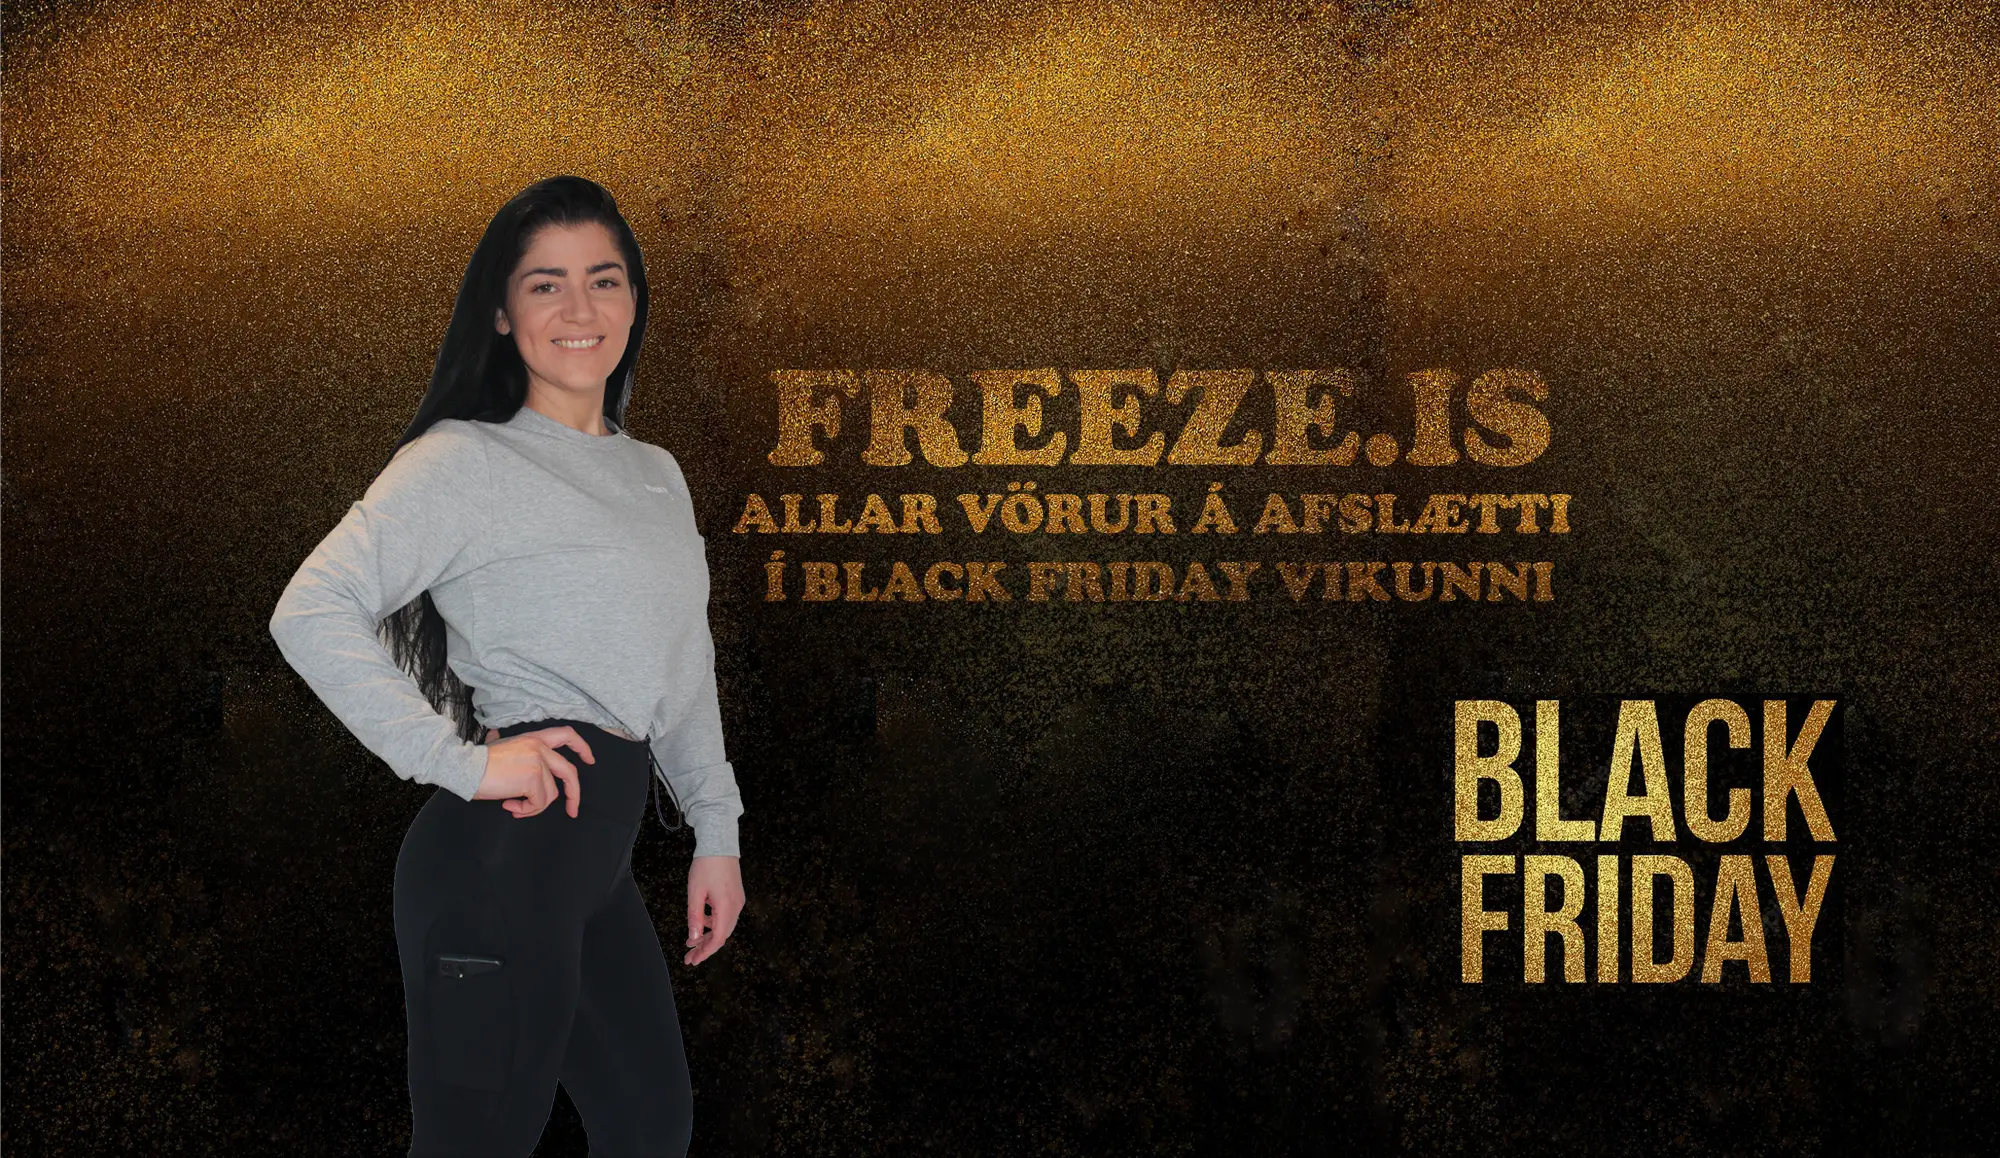 Black friday á freeze.is